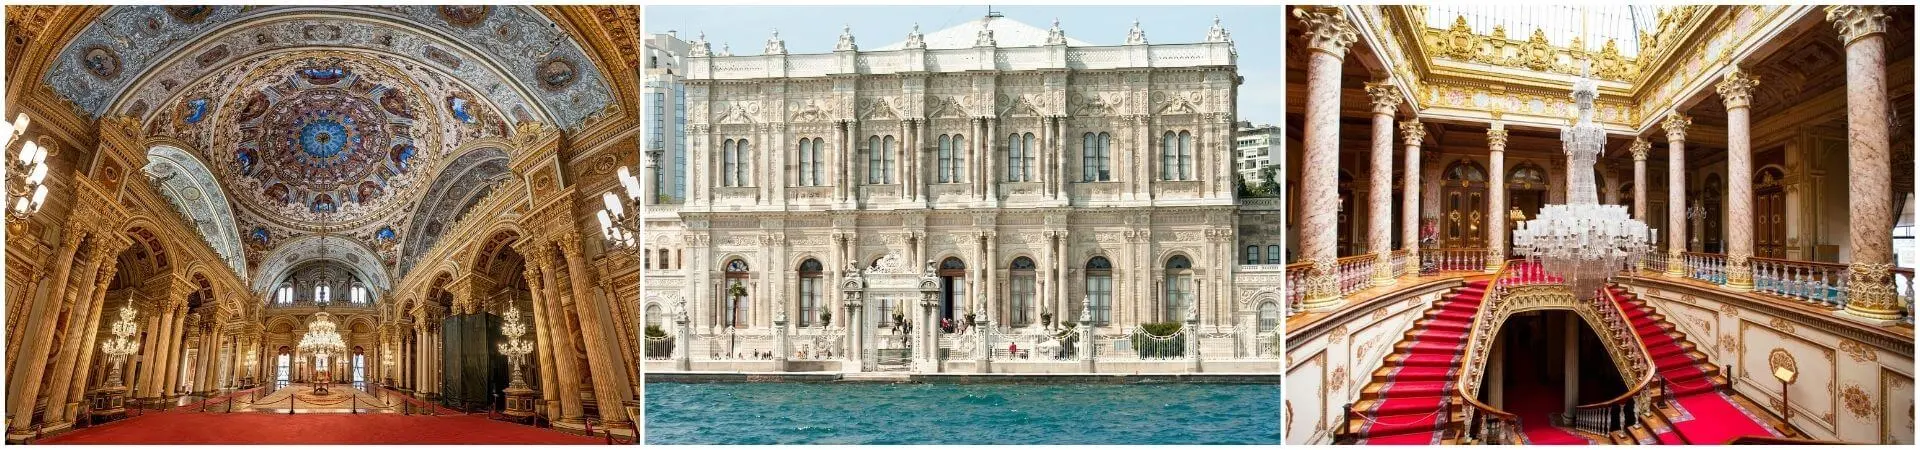 Visite guidée du palais de Dolmabahce